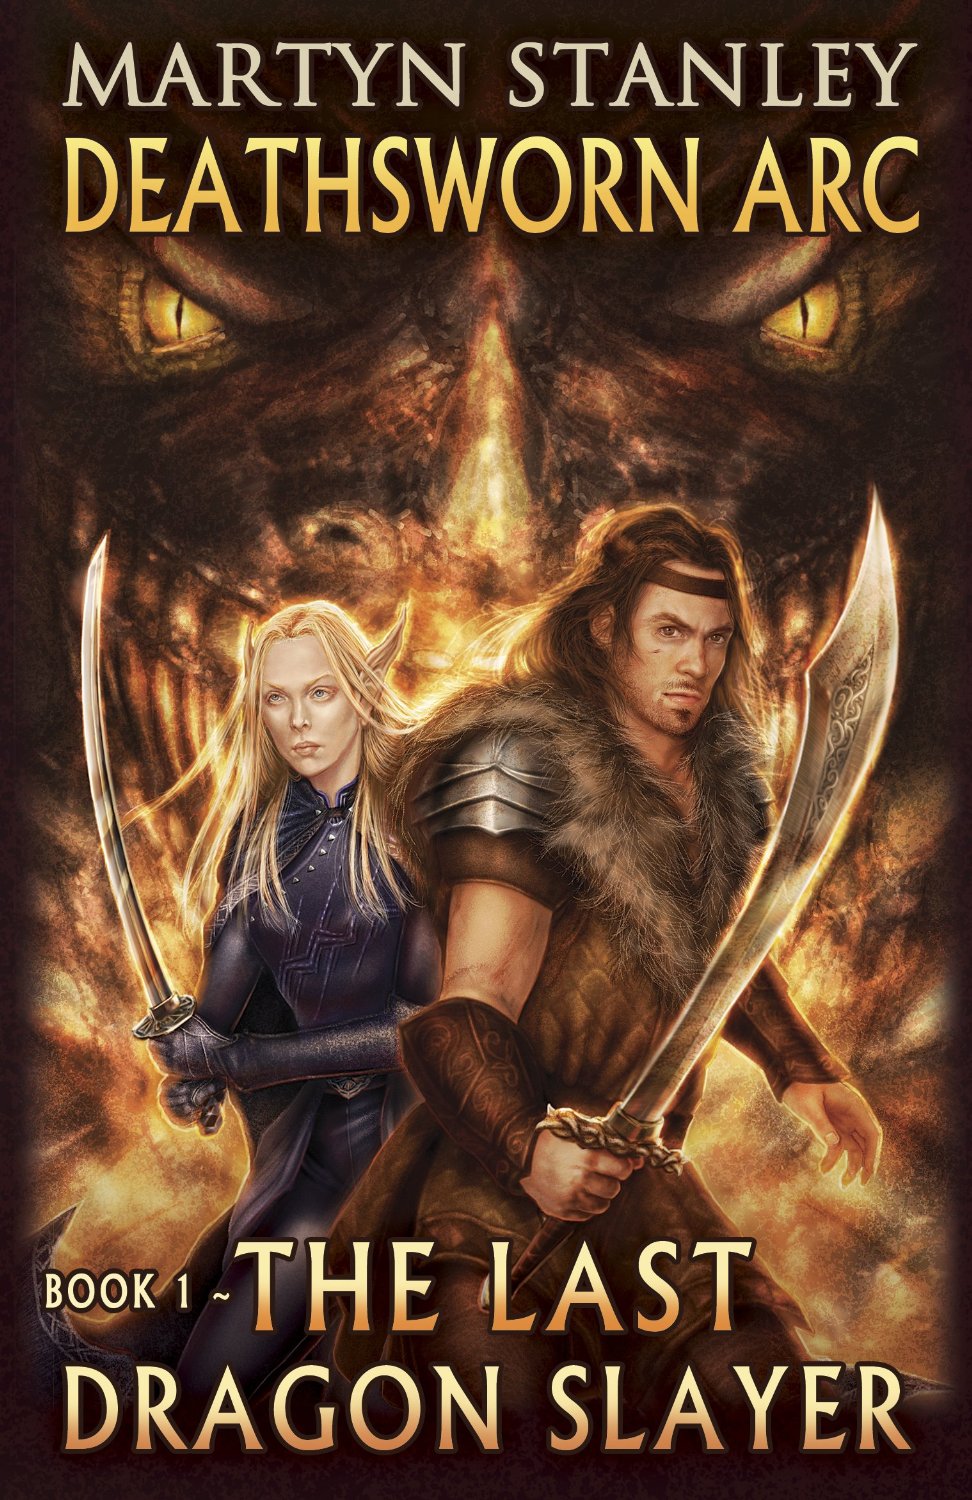 The Last Dragon Slayer (Deathsworn Arc Book 1) by Martyn Stanley